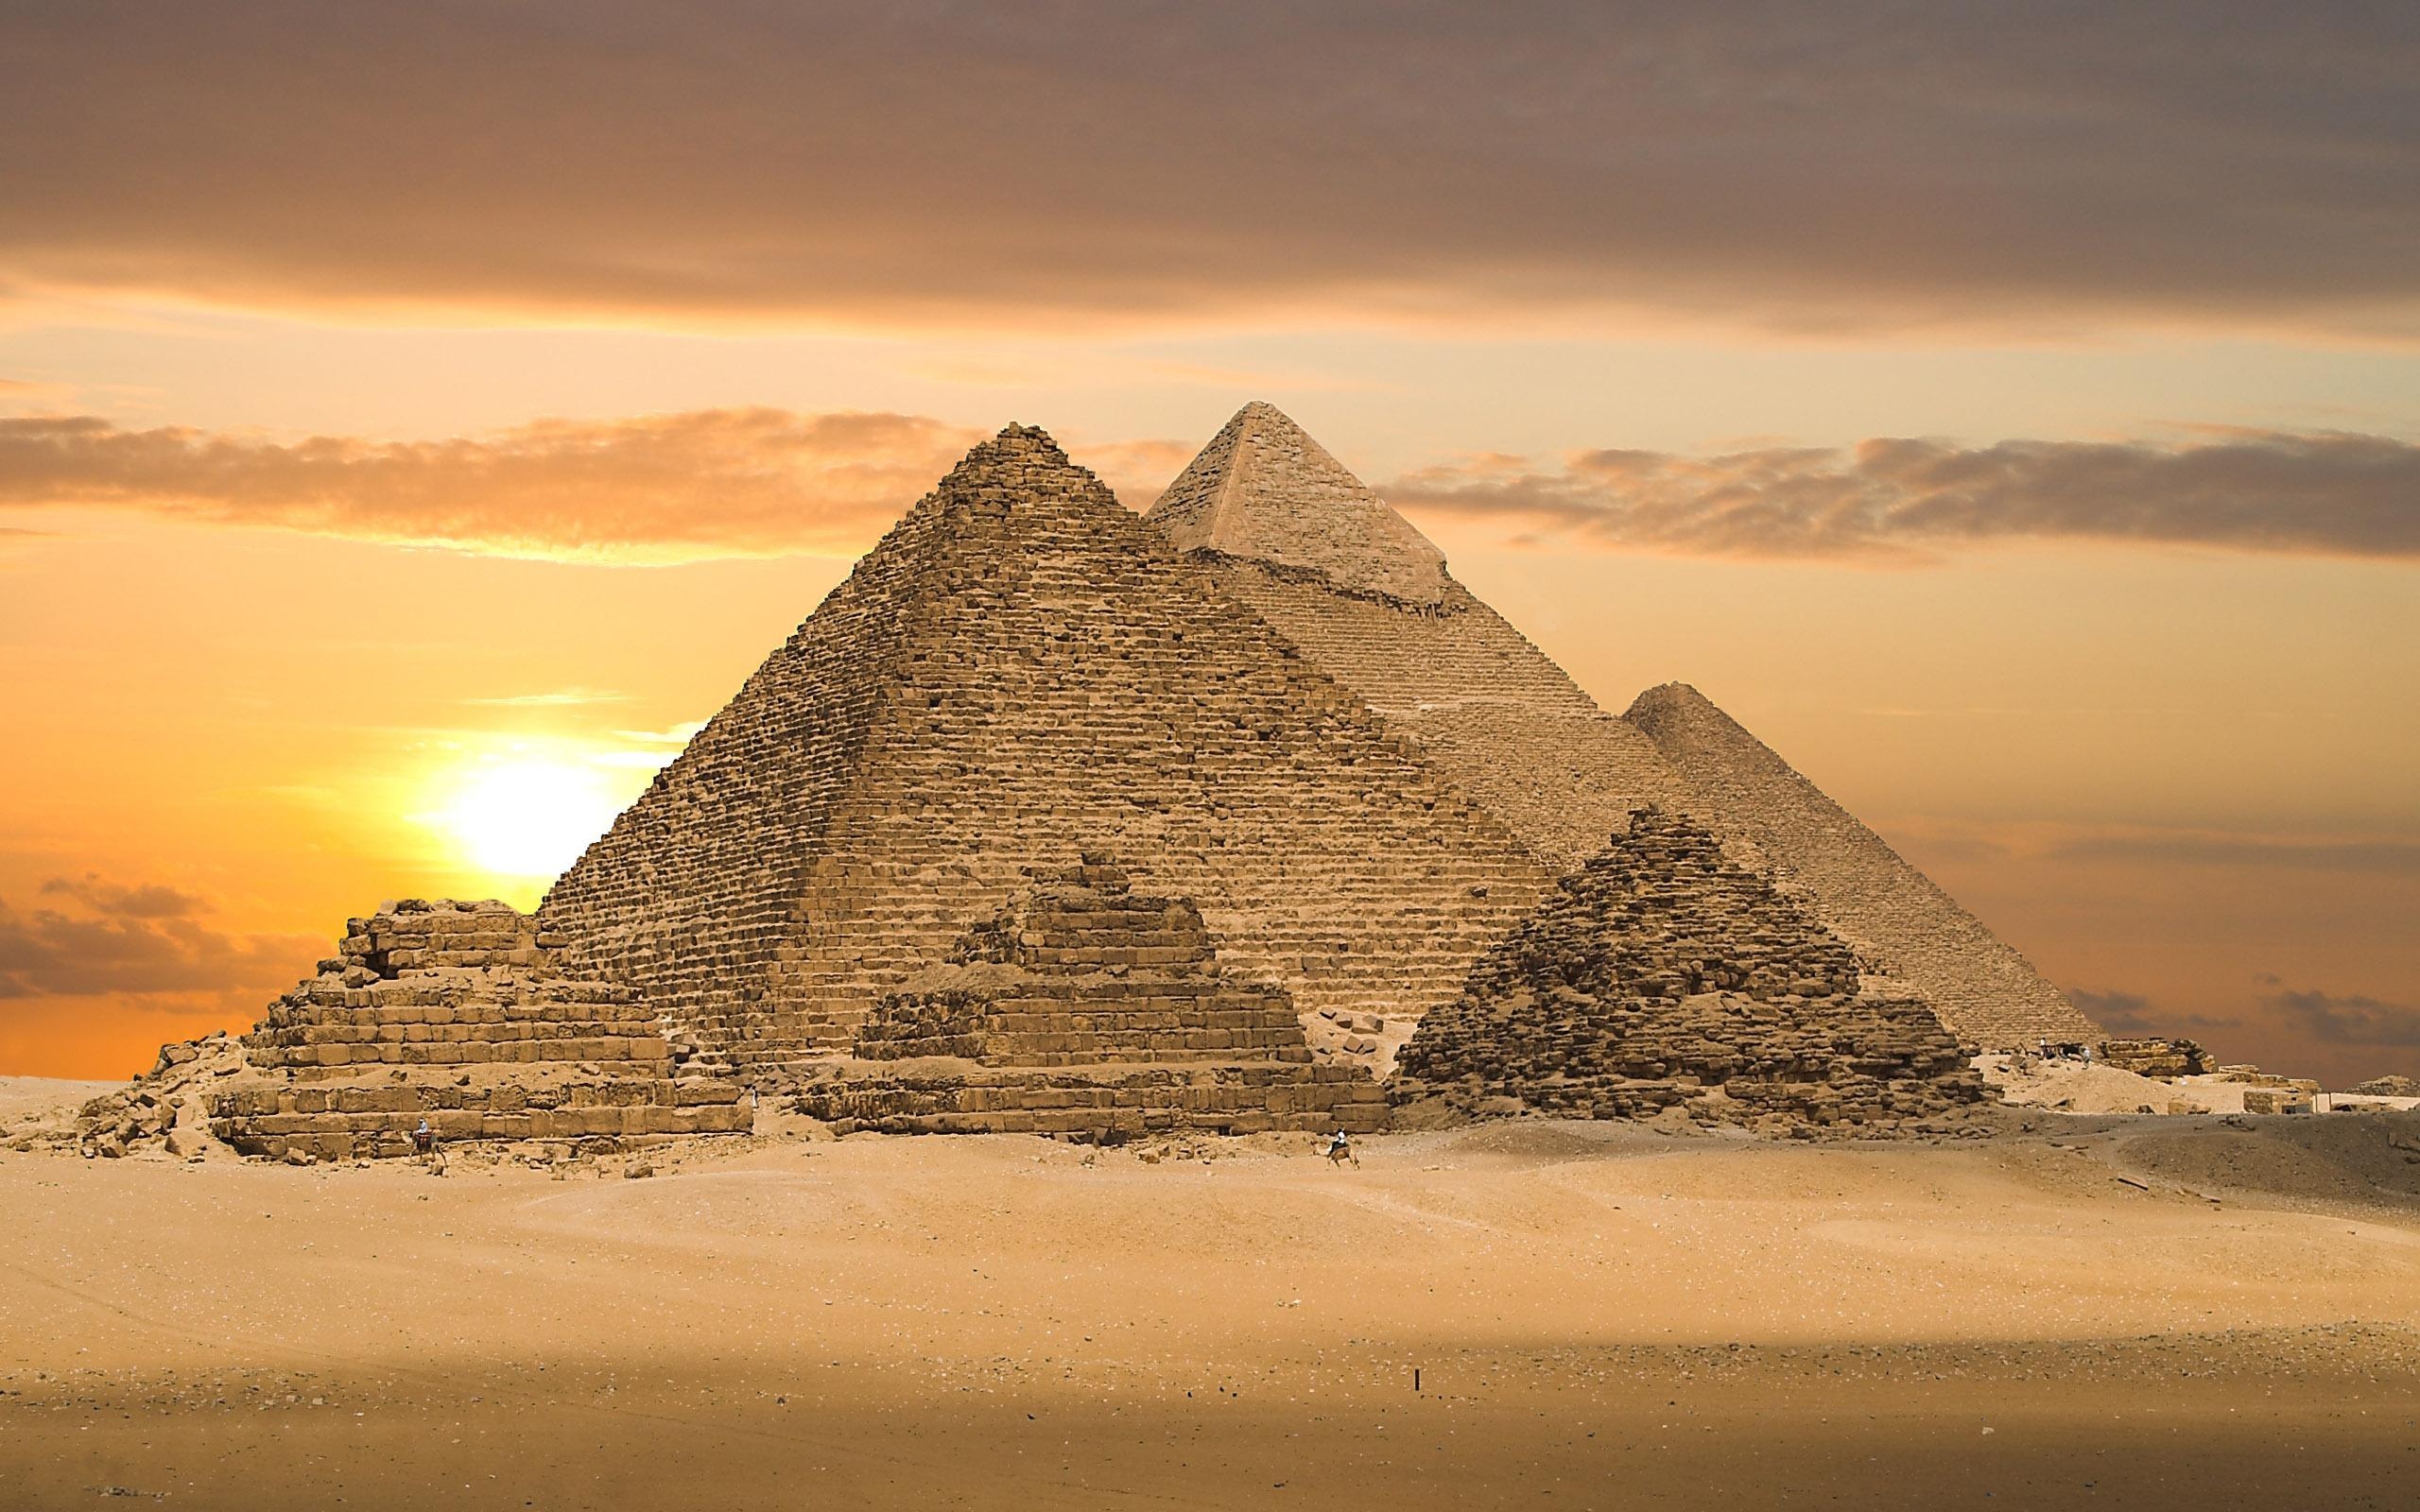 沙漠,金字塔,埃及壁纸2560x1440分辨率查看